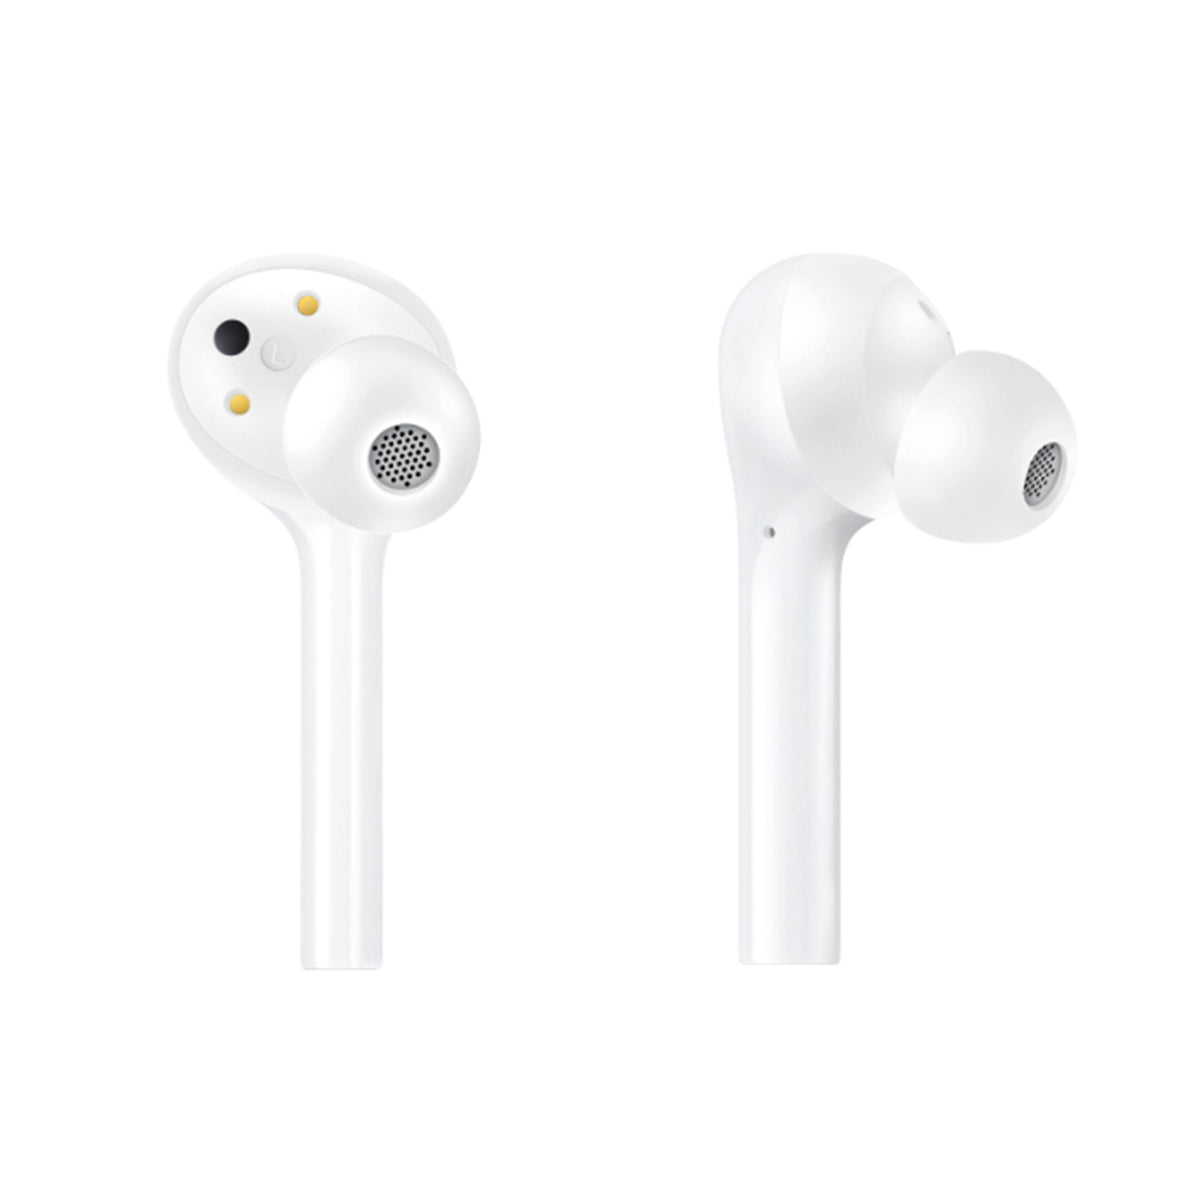 Huawei Freebuds Lite: auriculares internos con Bluetooth, cancelación de ruido y protección a prueba de agua - Huawei Freebuds Lite: in-ear headphones with Bluetooth, noise cancellation and waterproof protection